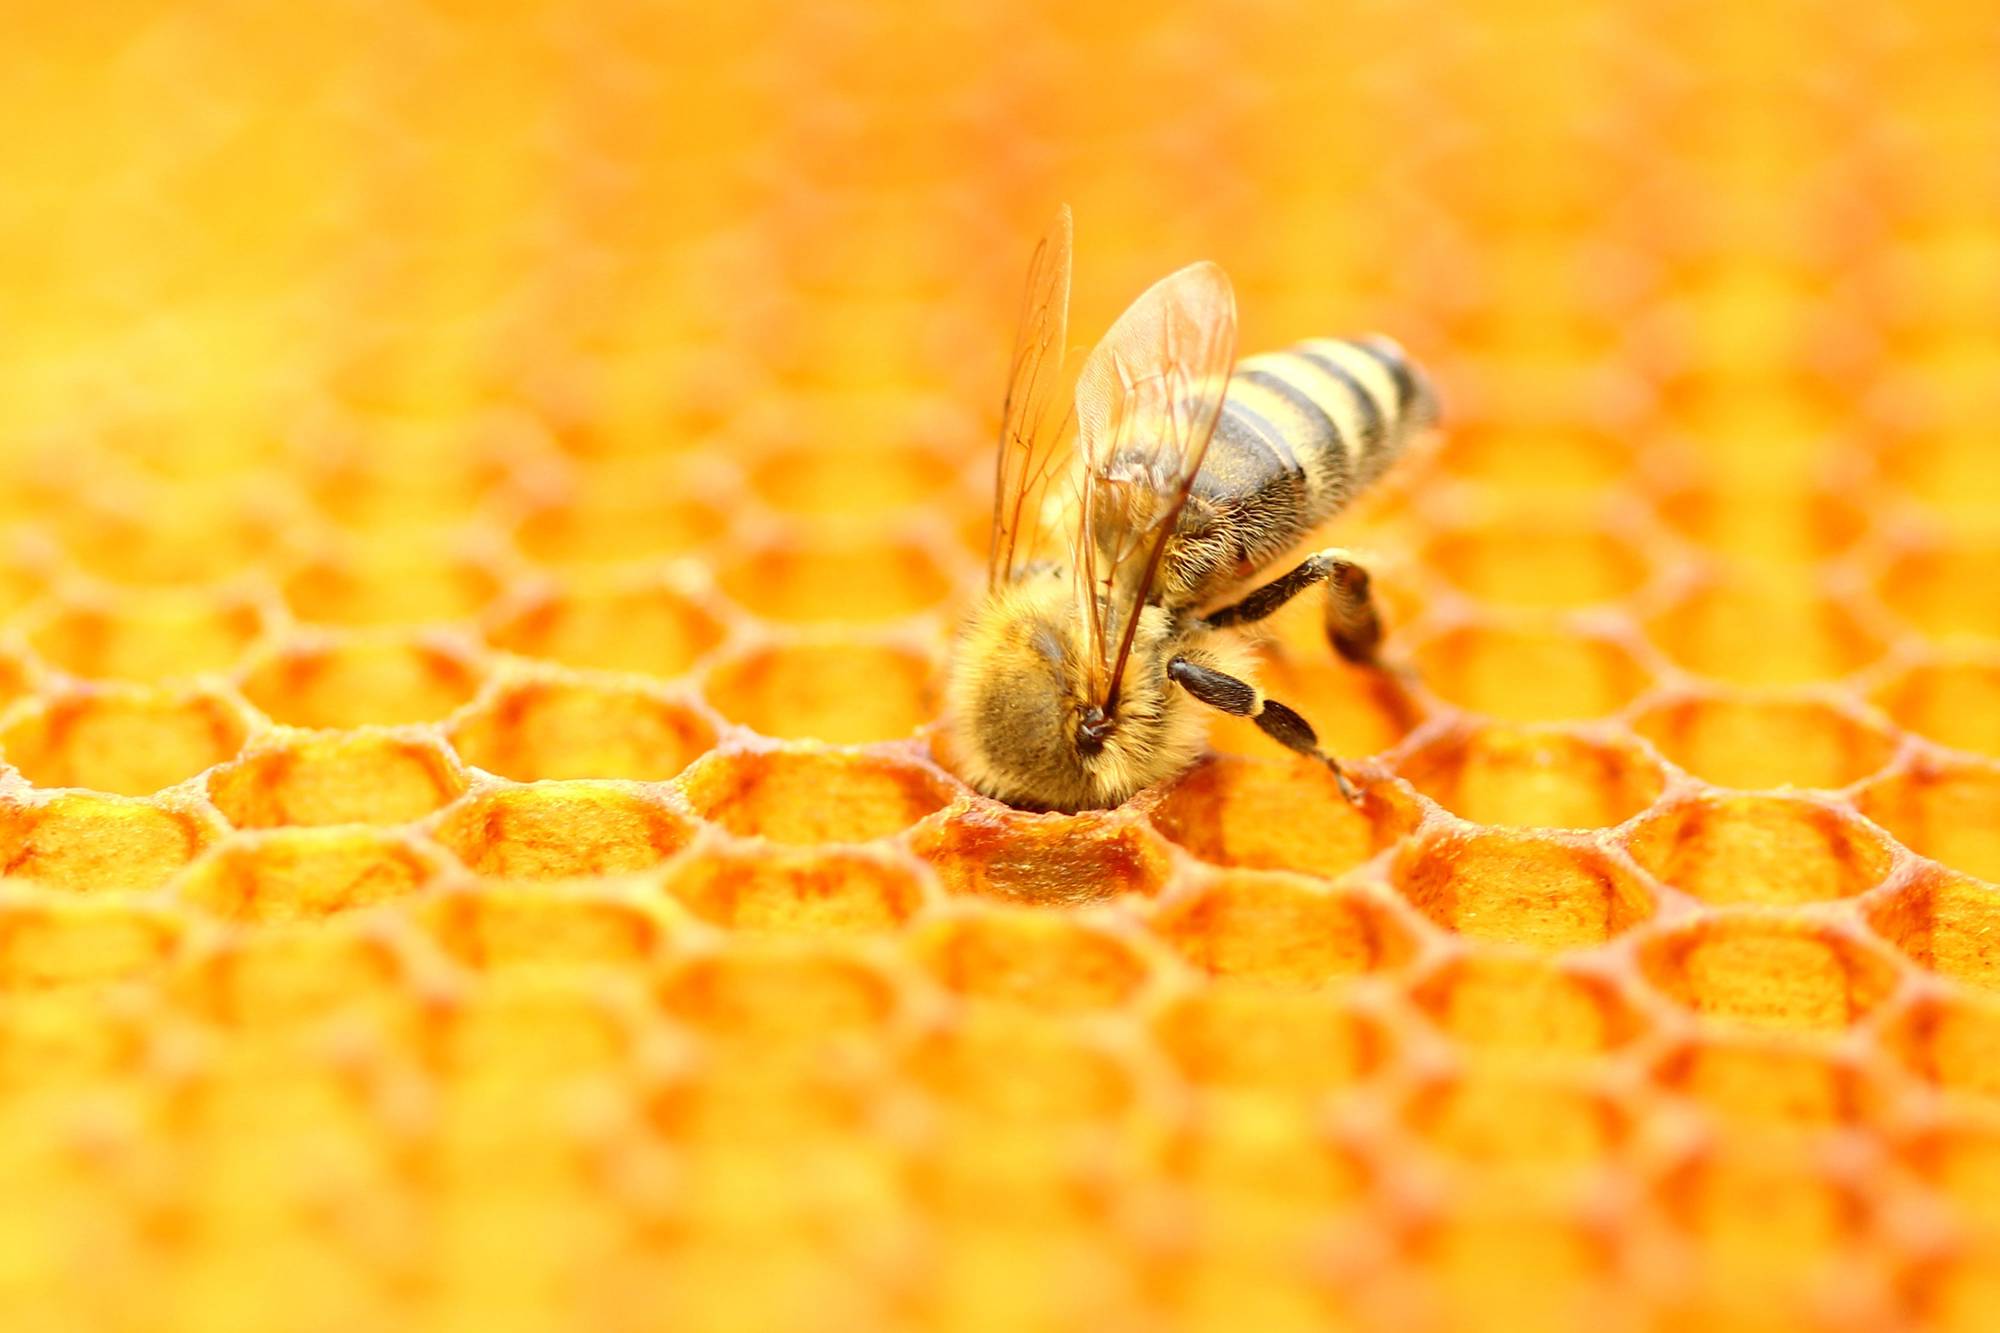 panal de abejas